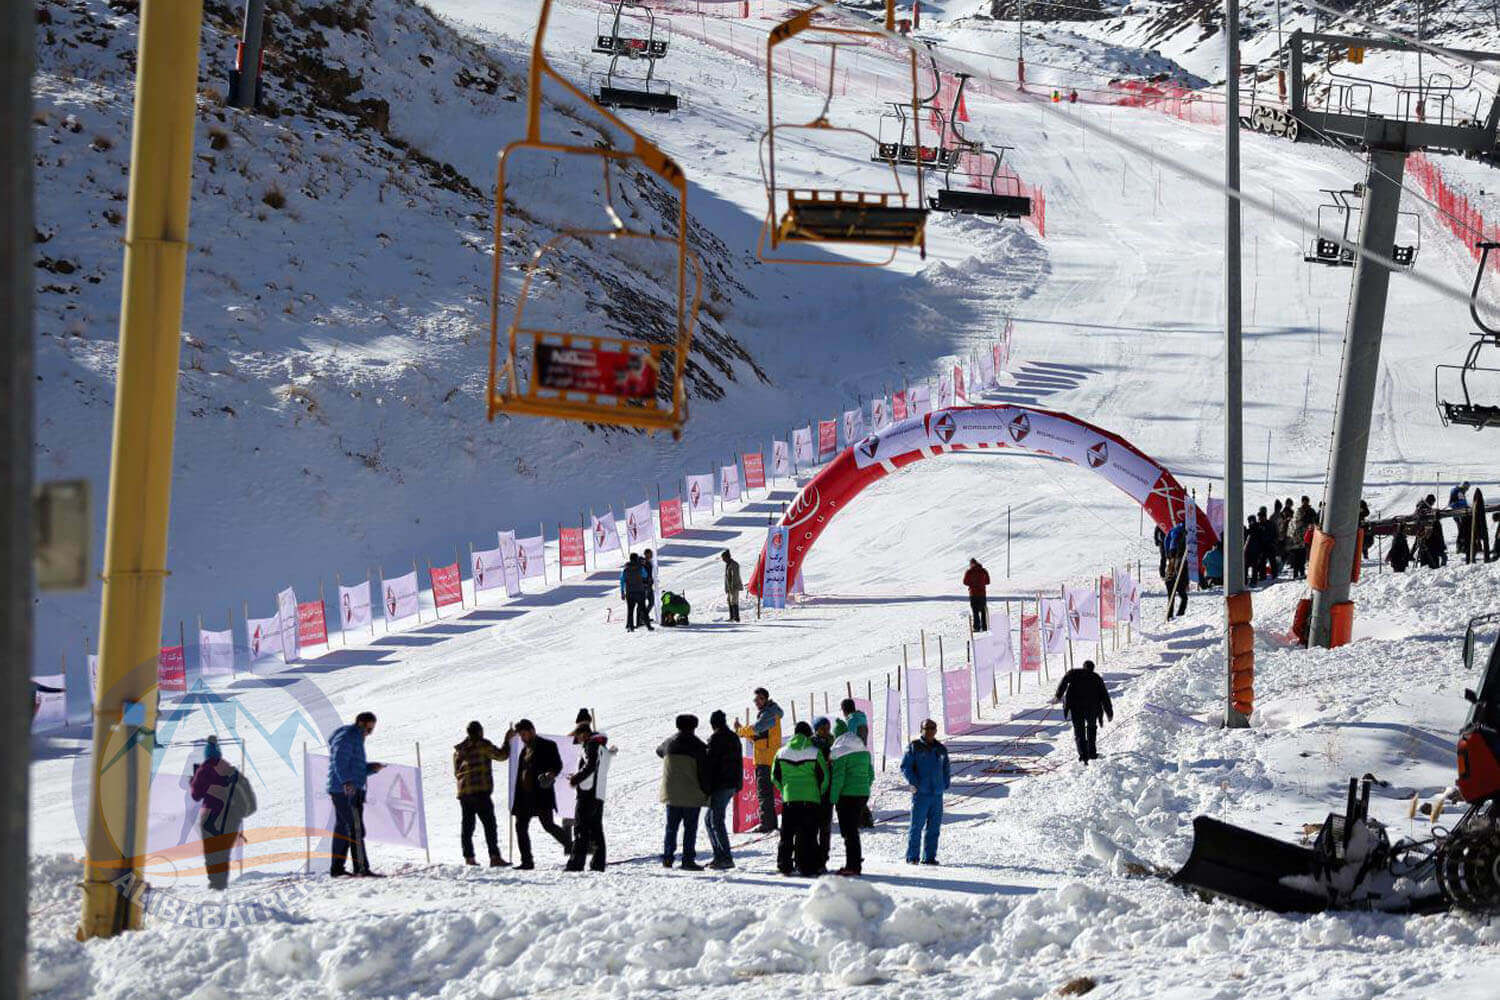 Alibabatrek Iran tours Iran tour packages Skiing in iran ski resort Iran Cultural tour Darbandsar Ski Resort3